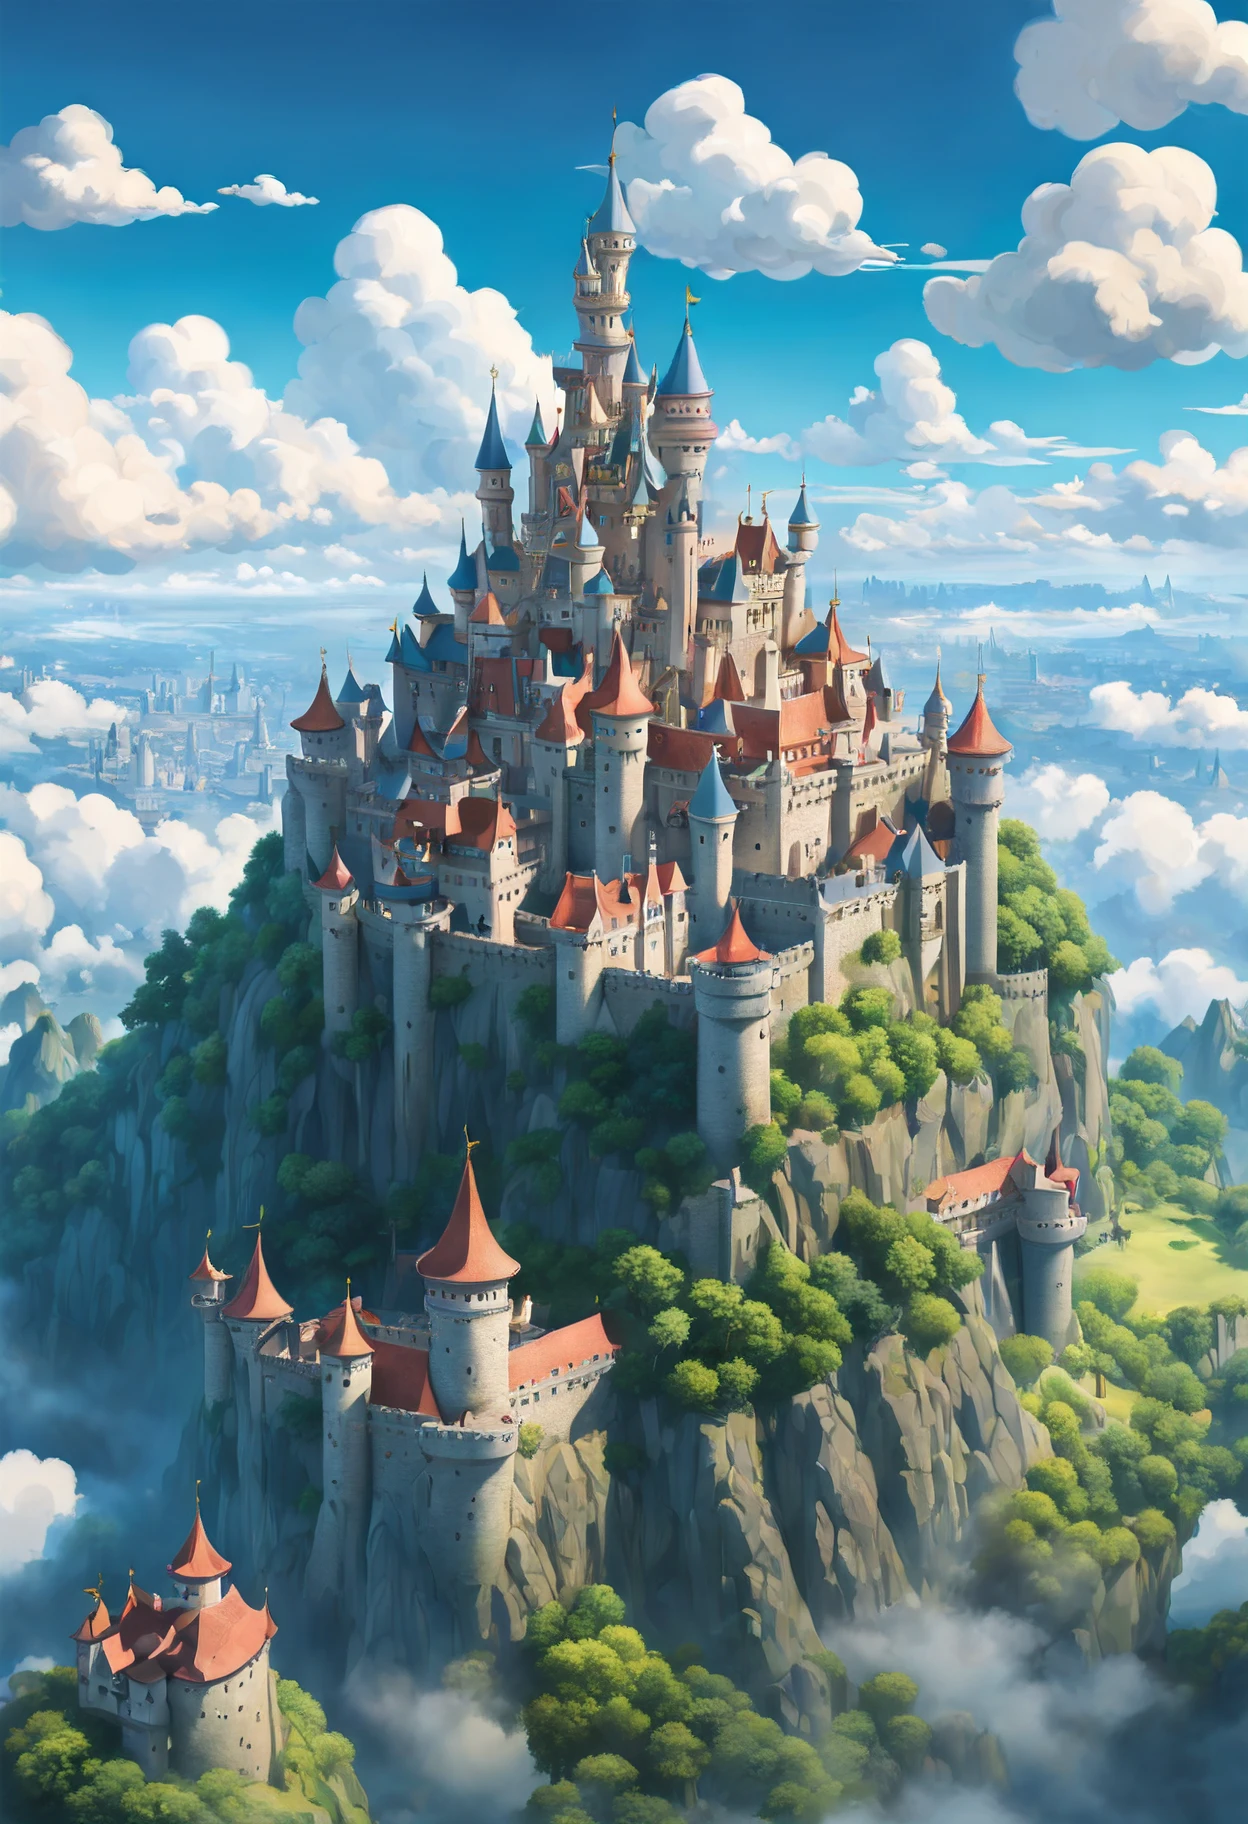 Uma fusão do estilo artístico de Hayao Miyazaki e do Studio Ghibli, [castelo|fortaleza do céu], voando entre as nuvens, esplêndida vista de um (reino animado no céu:1.5), como visto através da lente de um (Drone:1.2), capturado em vívido, panorâmico 8K, pintado com cores extravagantes, definido em um (tarde ensolarada), featuring meticulous details of the castelo architecture, capturando a essência de um estilo dreamlikeart e mdjrny-v4, iluminação nostálgica definindo um charme vintage, destacada por um [(Steven Spielberg:1.2) magia cinematográfica inspirada], detalhes intrincados que lembram o estilo de Claude Monet e Vincent van Gogh, um conto de fadas que ganha vida em um (lente telefoto) tomada